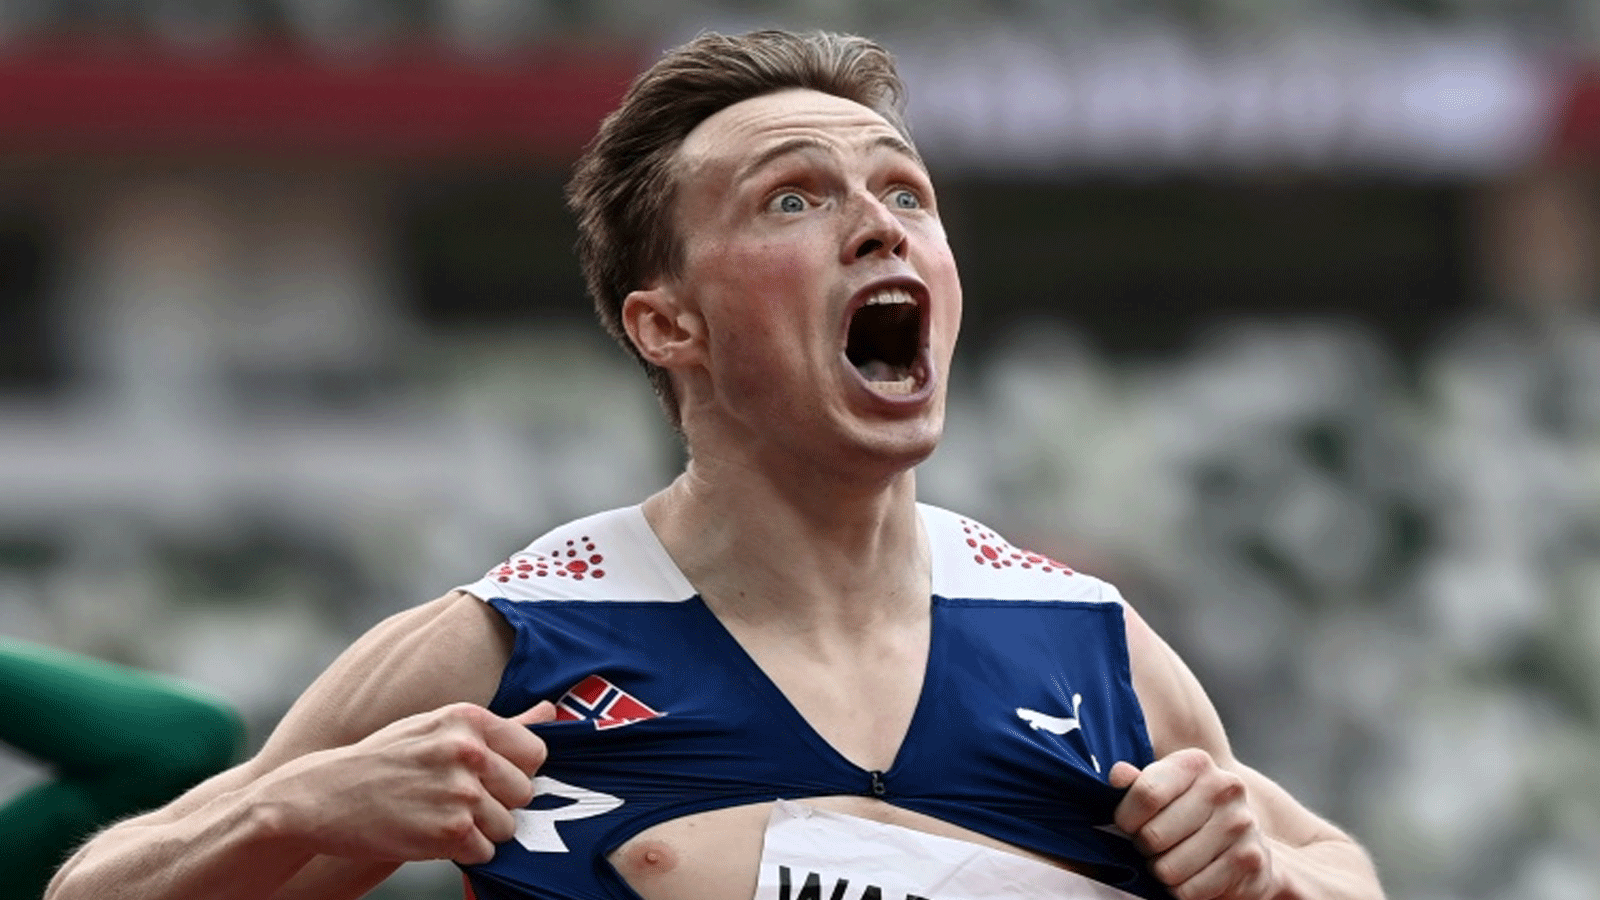 ردة فعل كارستن فارهولم بعد تحطيمه الرقم العالمي لسباق 400 م حواجز في أولمبياد طوكيو